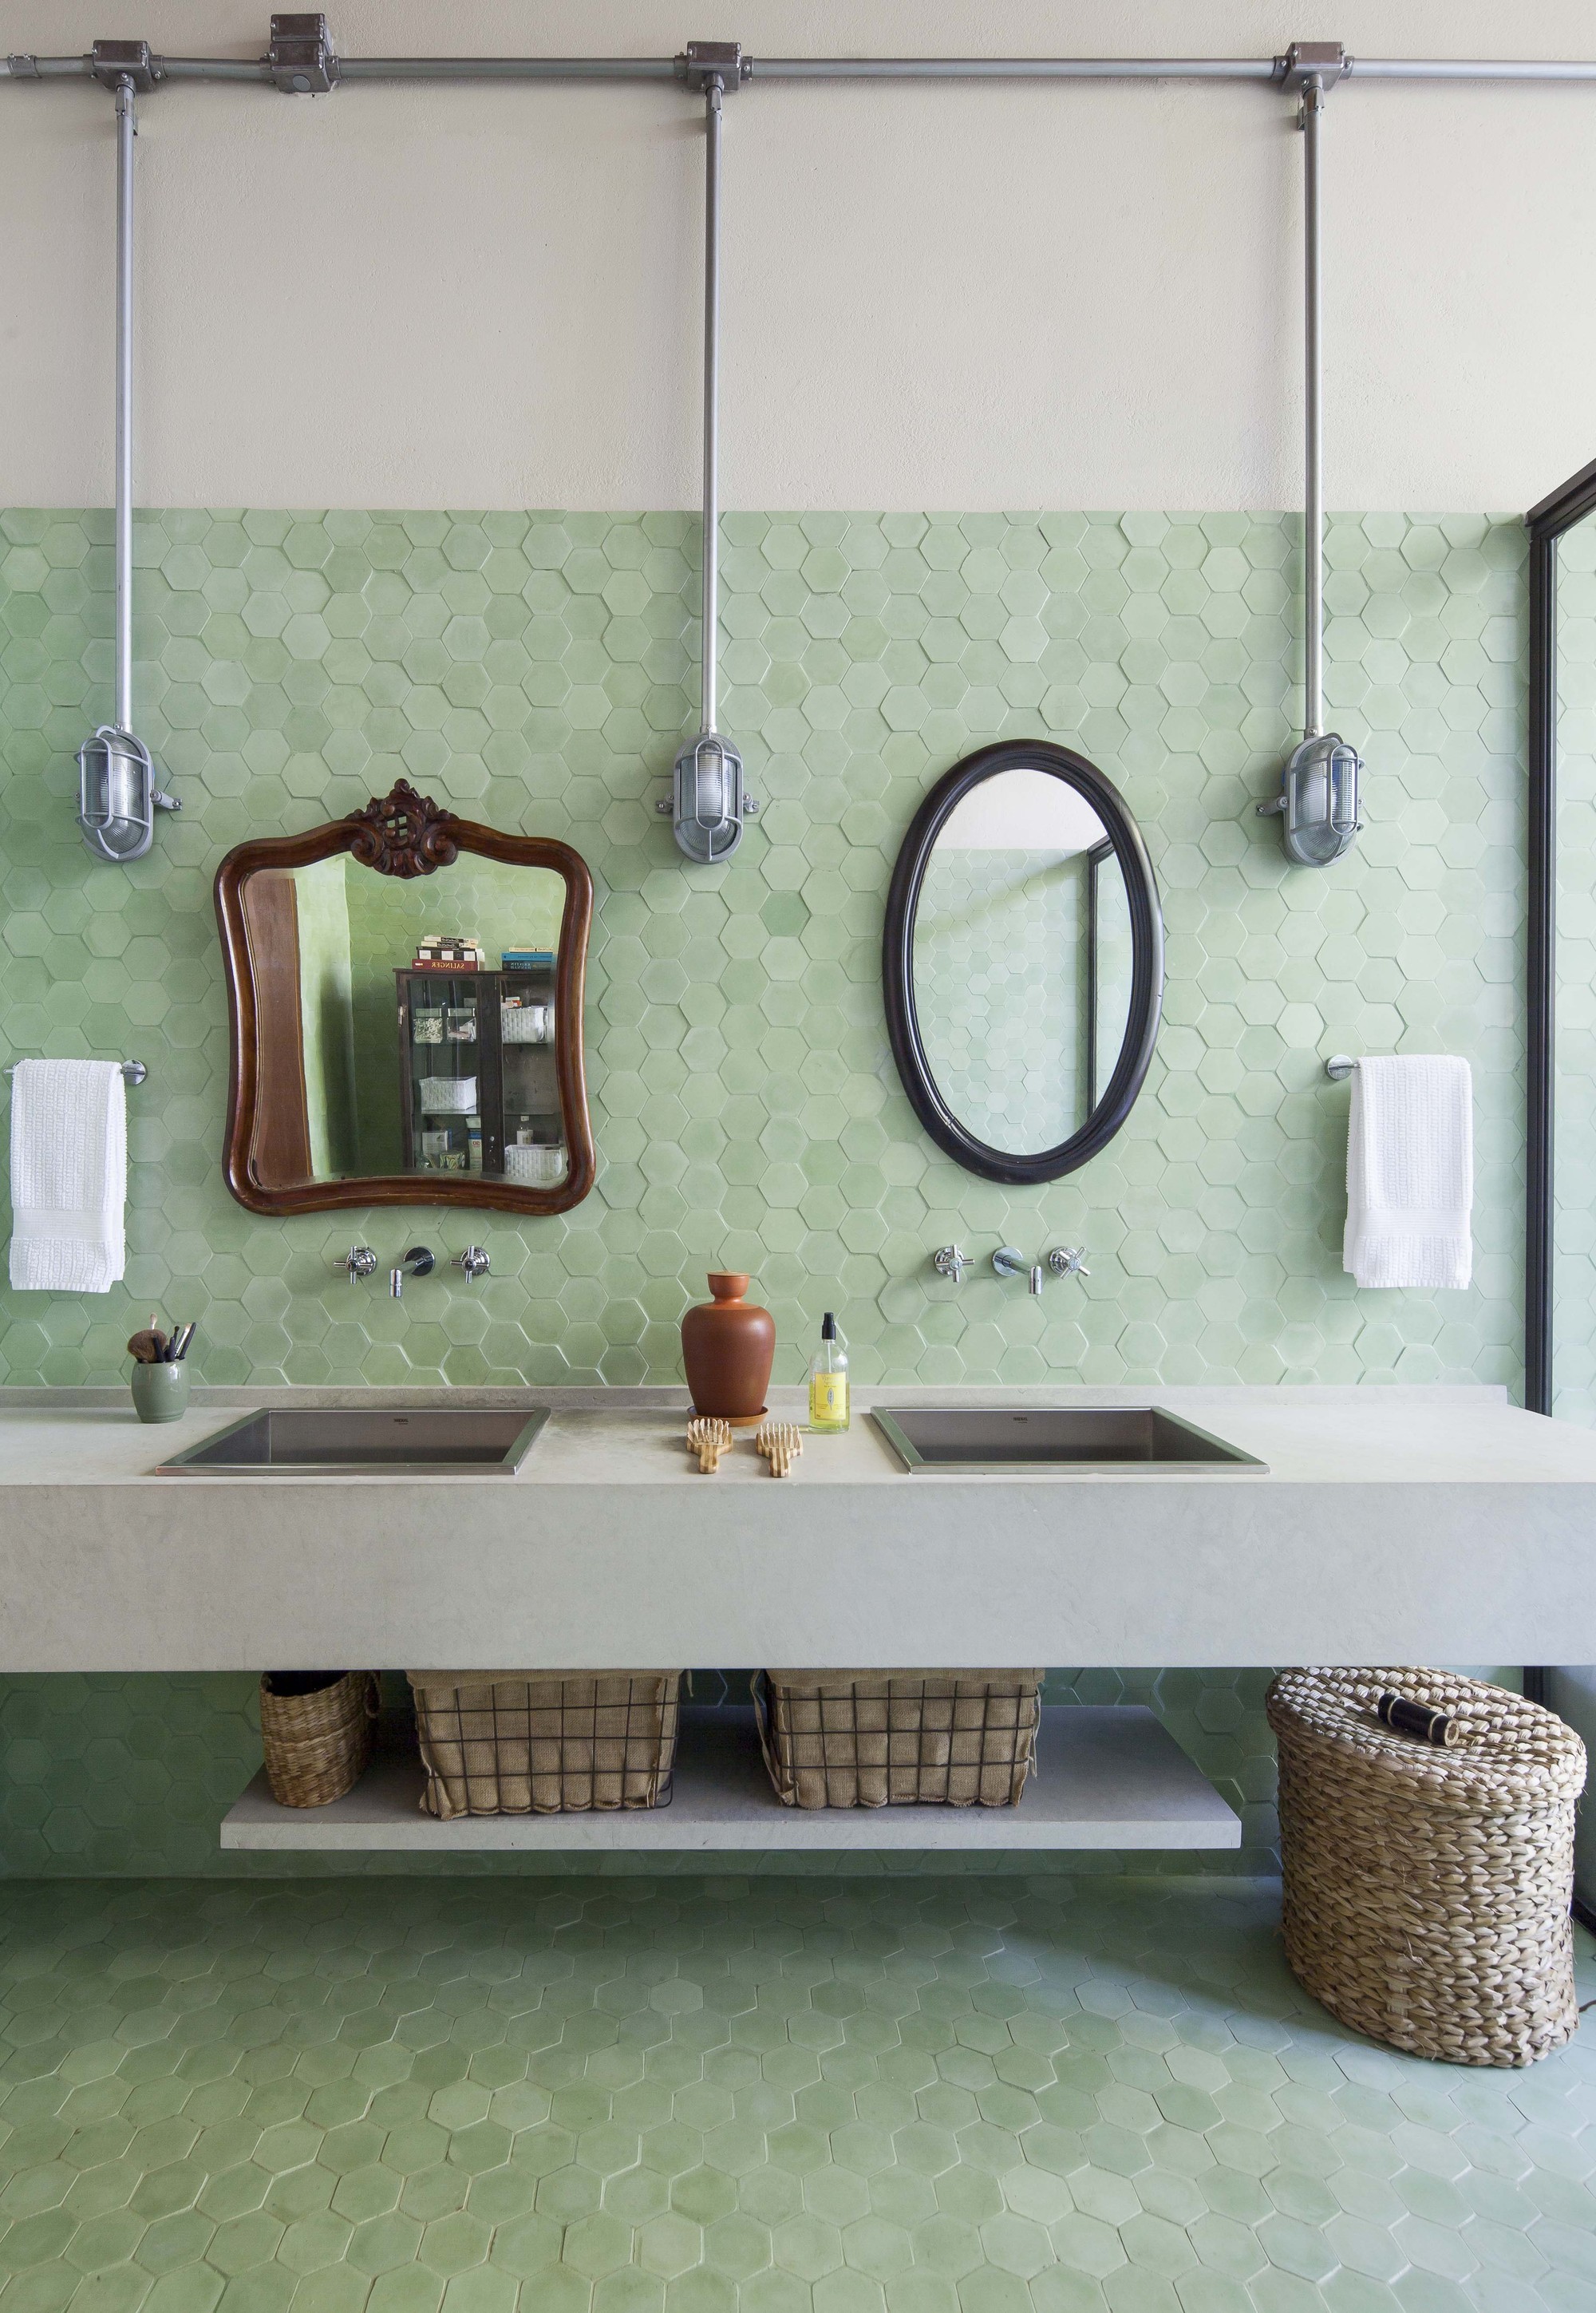 Décor do dia: banheiro com duas pias e estilo rústico (Foto: Divulgação)